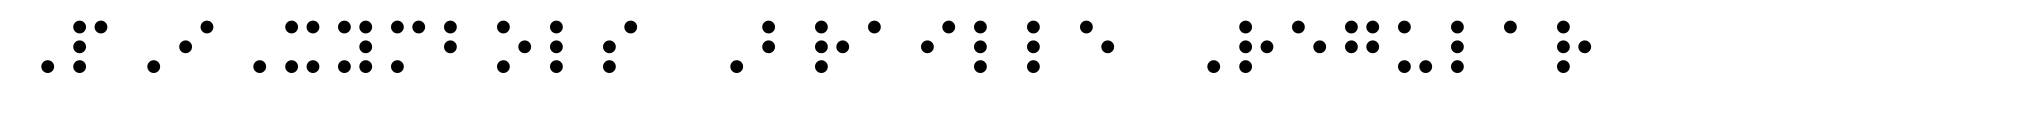 PIXymbols Braille Regular image